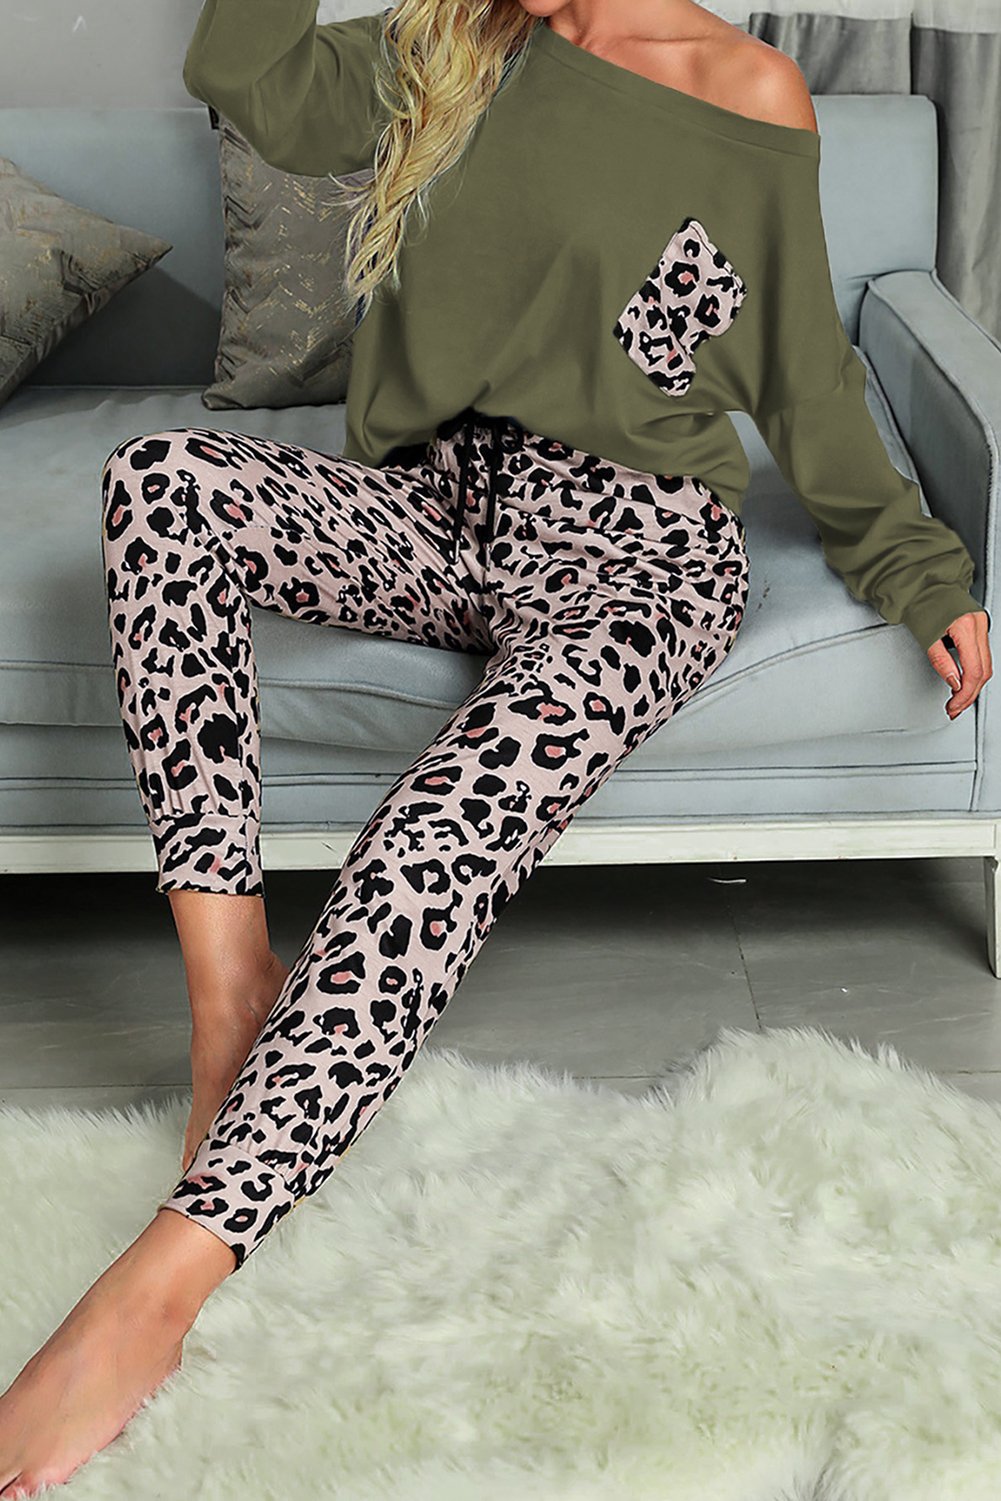 Long Sleeve Leopard Pants Loungewear Set Long Sleeve Leopard Pants Loungewear Set - M&R CORNERLoungewear M&R CORNER Green / S